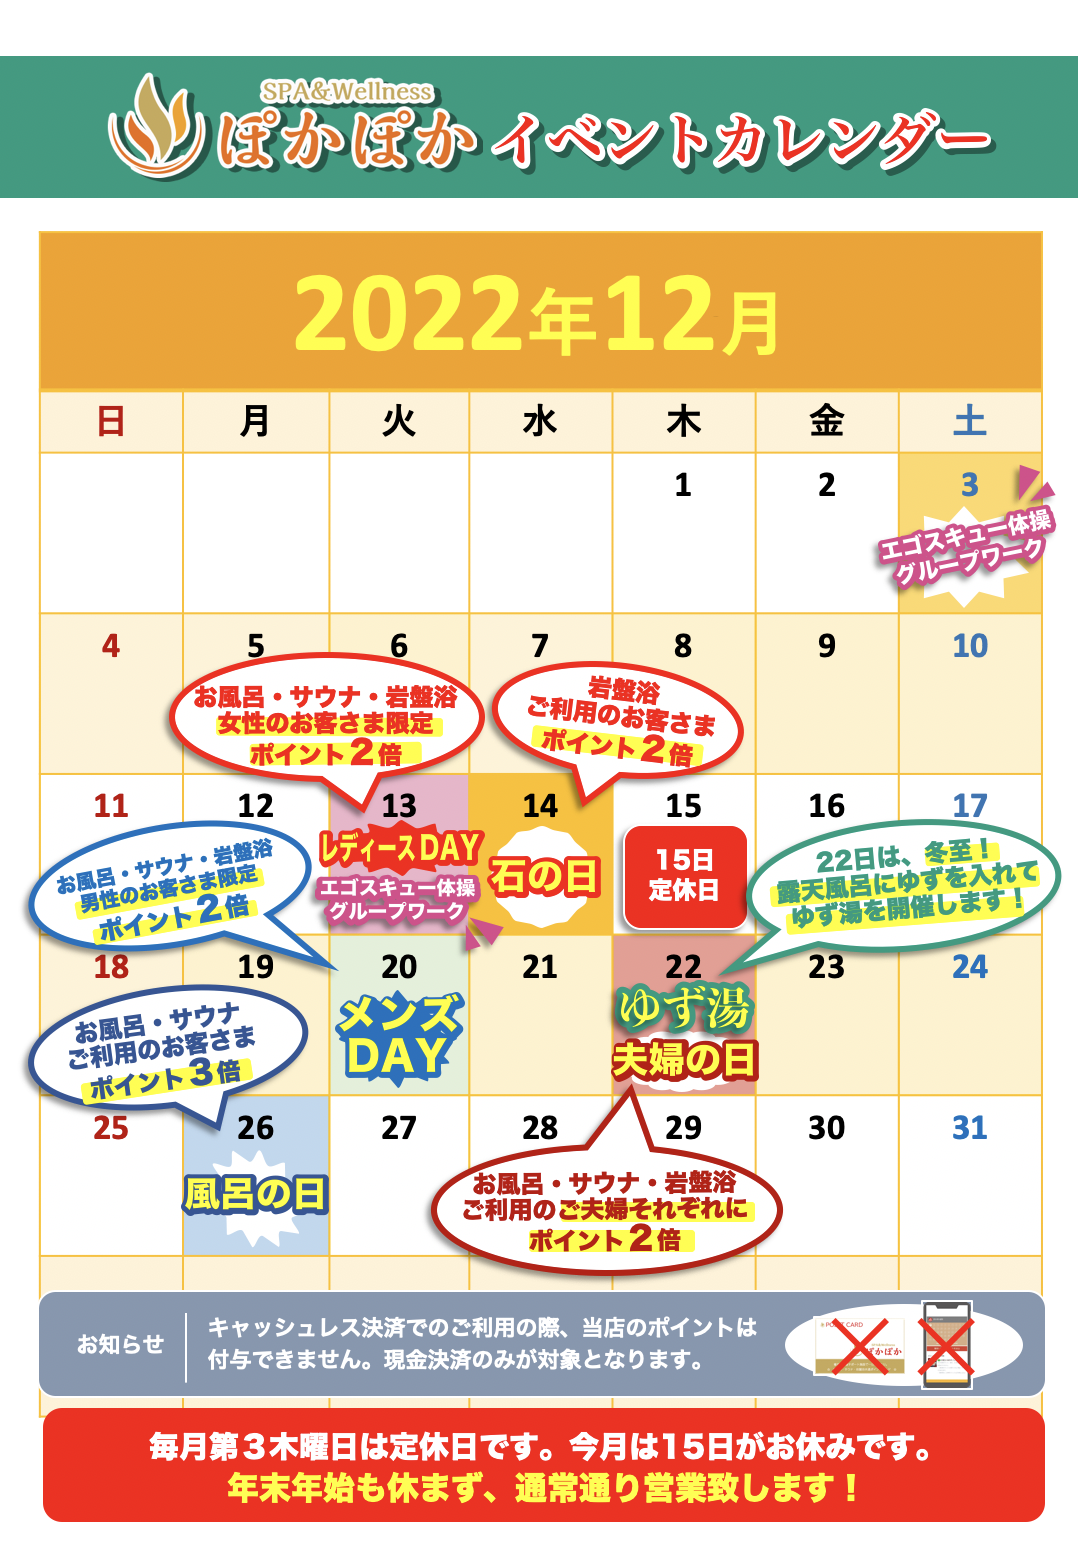 12月のイベントカレンダーのご案内【いよいよ年の瀬！エゴスキュー体操あり！ゆず湯あり！イベント目白押しです！】